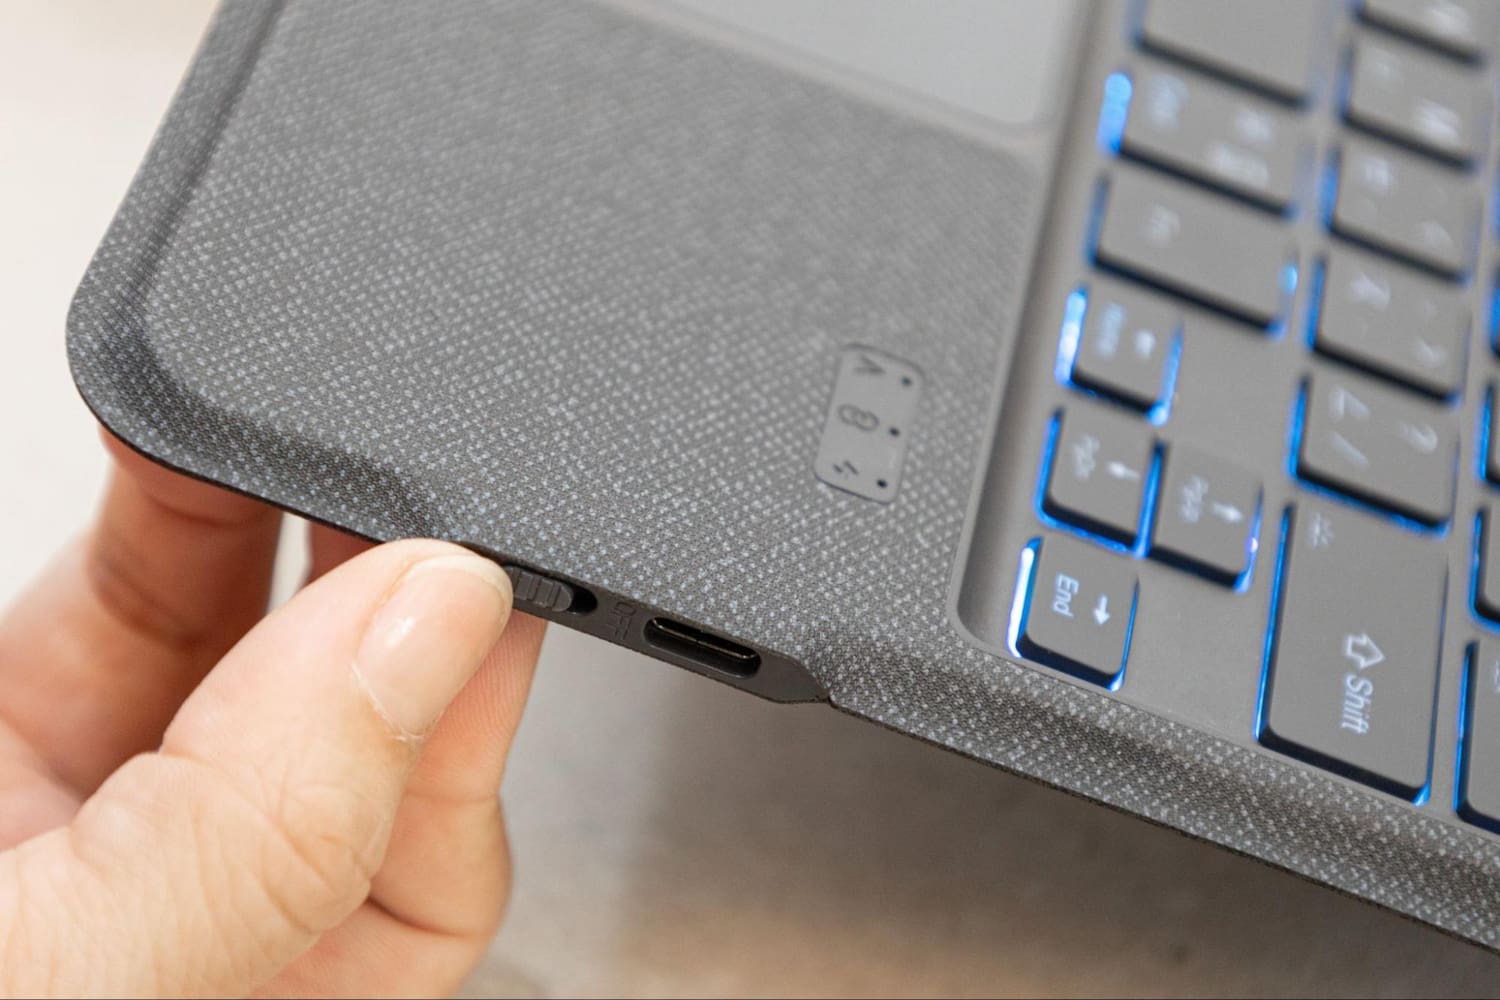 eiP Magnetix 磁吸可拆式藍芽鍵盤開箱評測：360度防護、多角度支架25